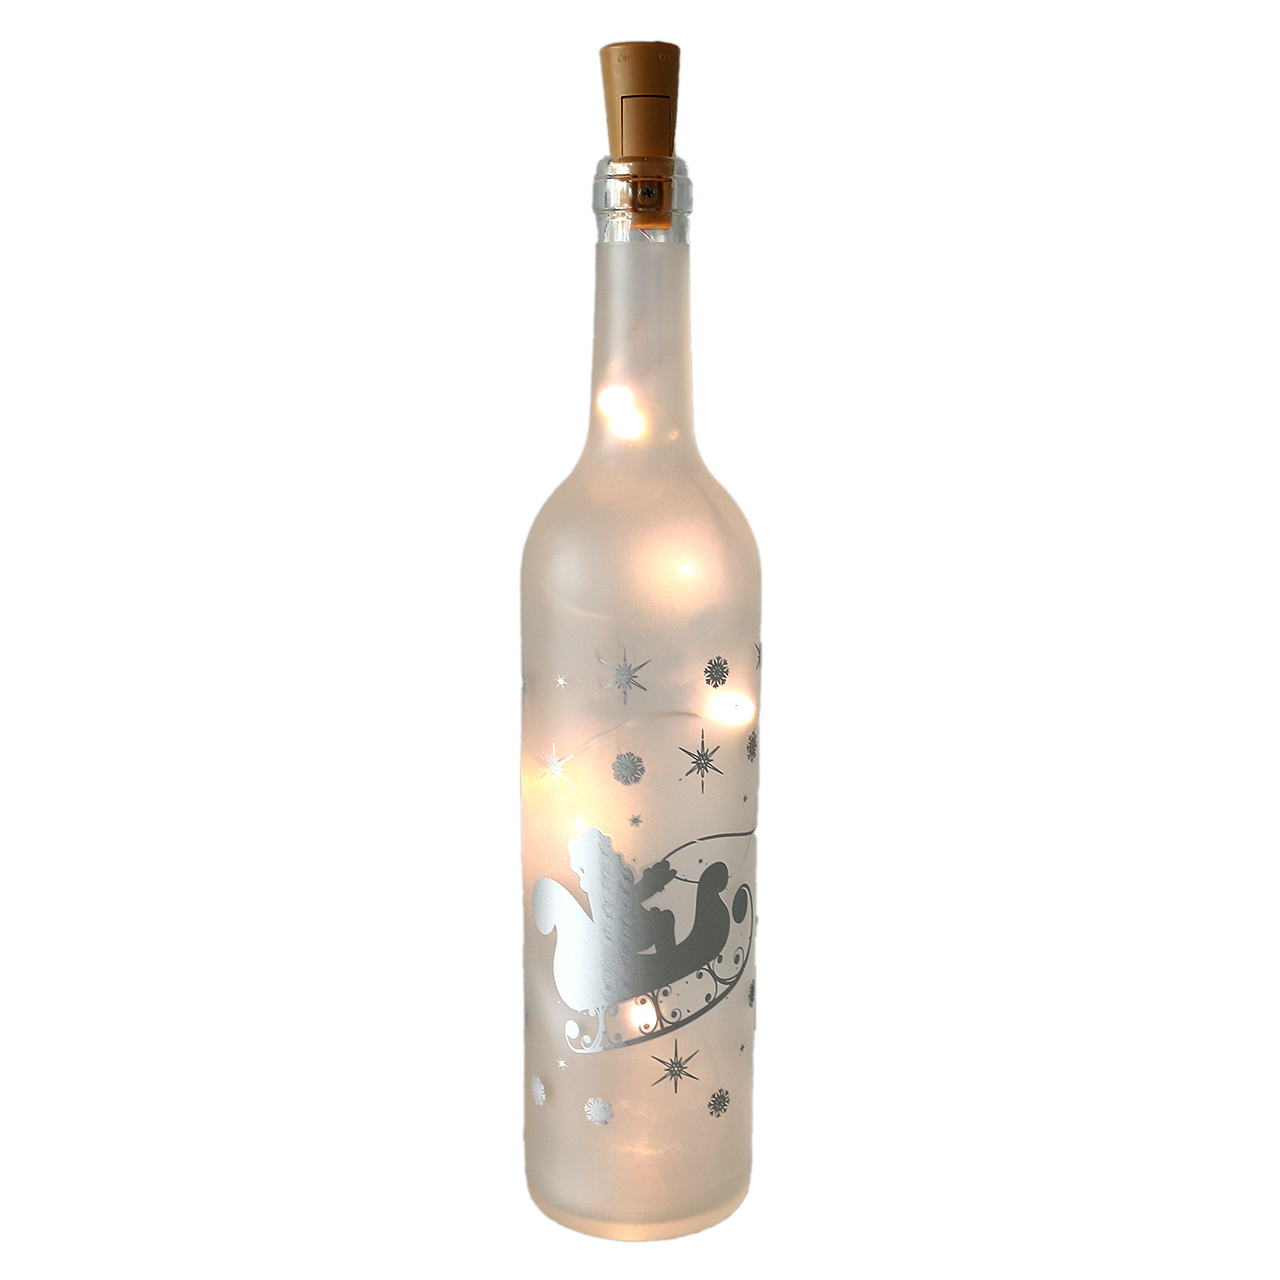 Beleuchtete Glasflasche 5 Led mit Sternen Weihnachten Weihnachtsdekoration klar 